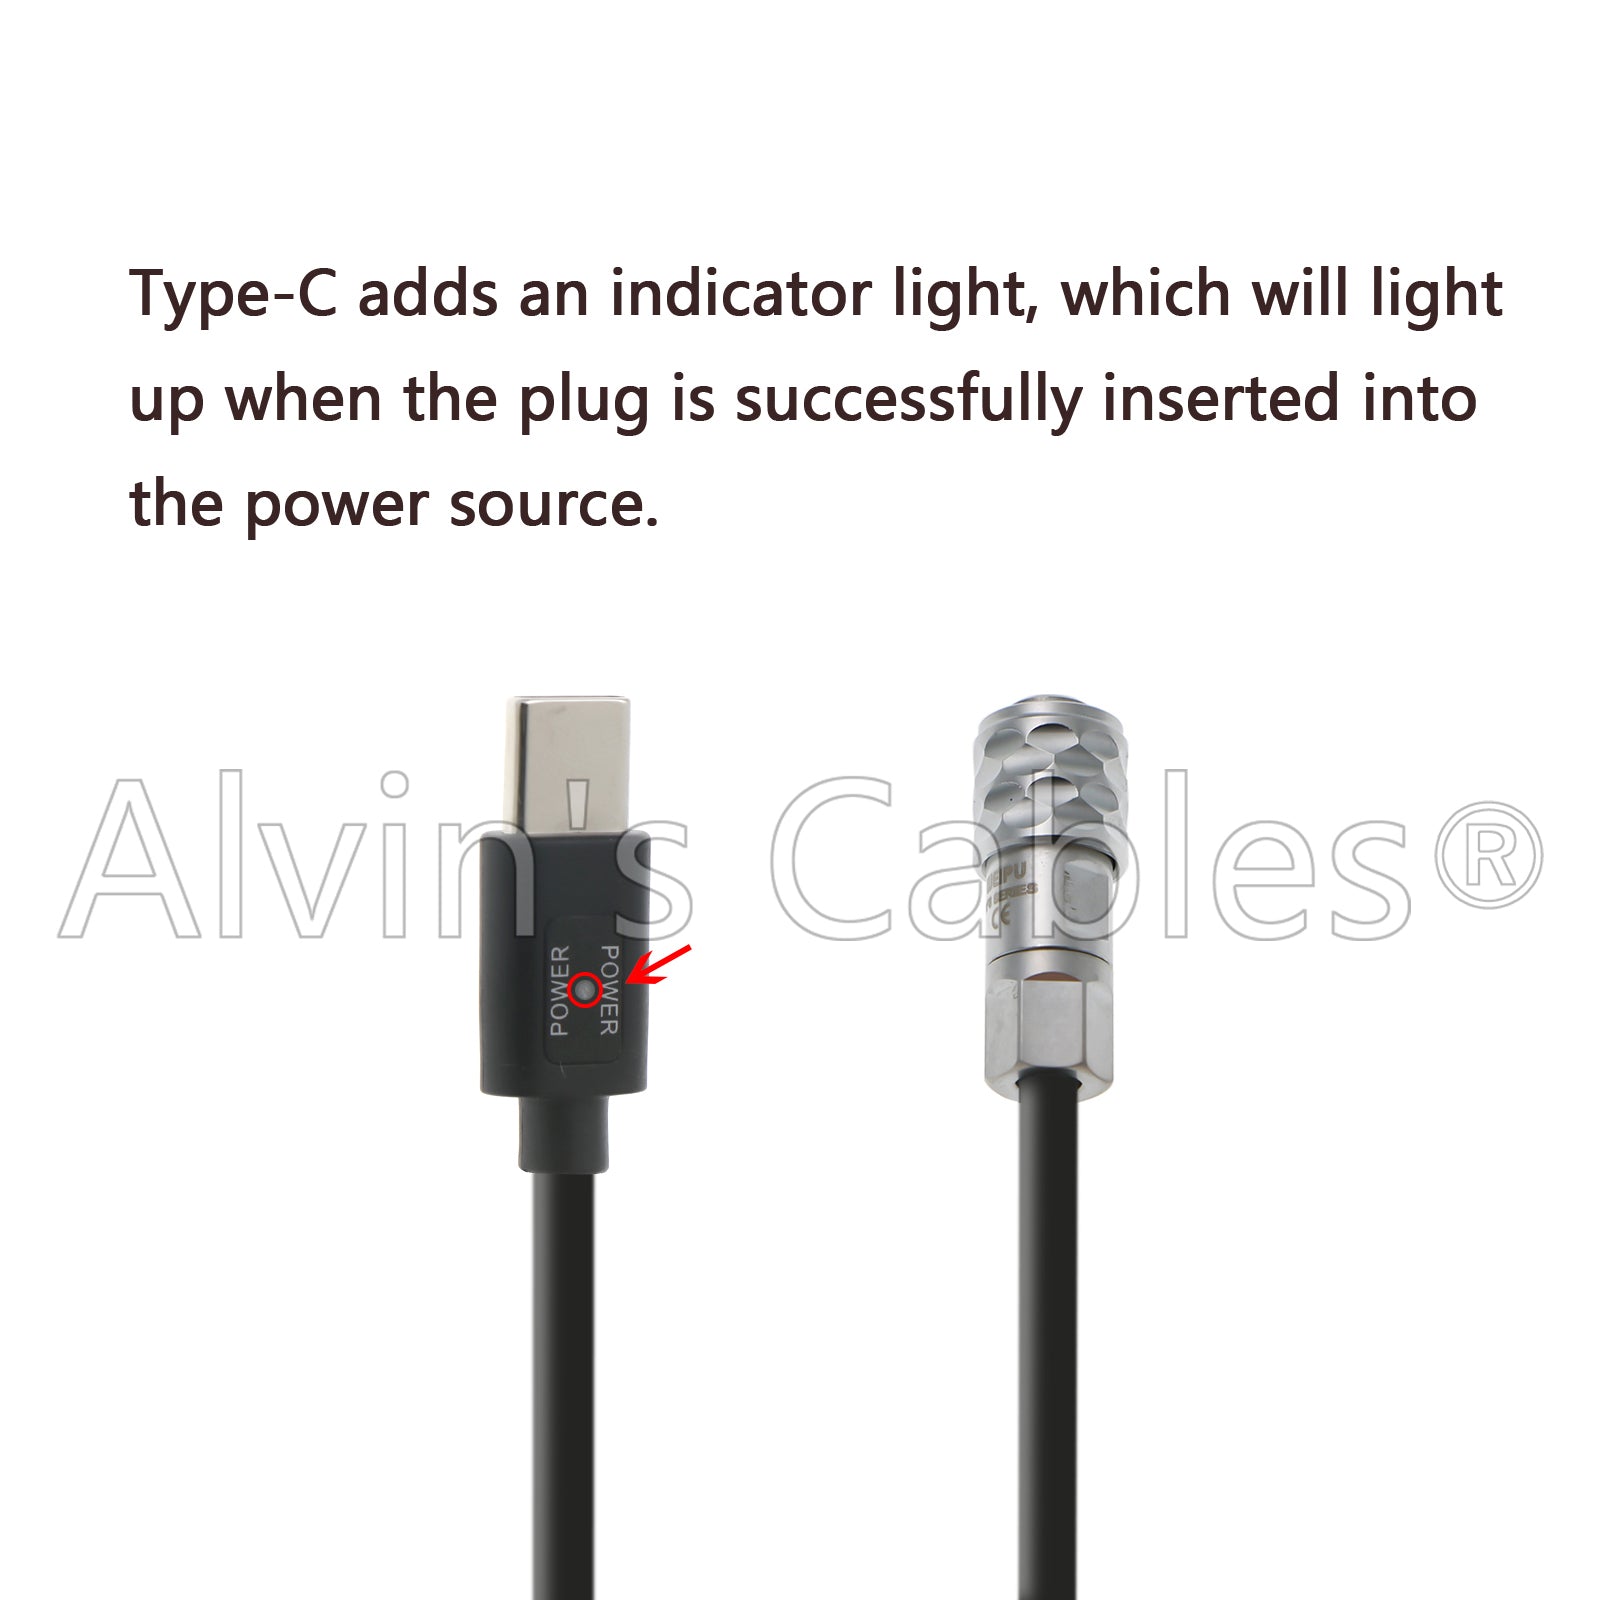 BMPCC-4K|6K Stromkabel für Blackmagic-Pocket-Cinema-Kamera von Power-Bank USB QC 2.0|3.0 12V auf 2-Pin Female Flexibles Spiralkabel Alvin's Cables